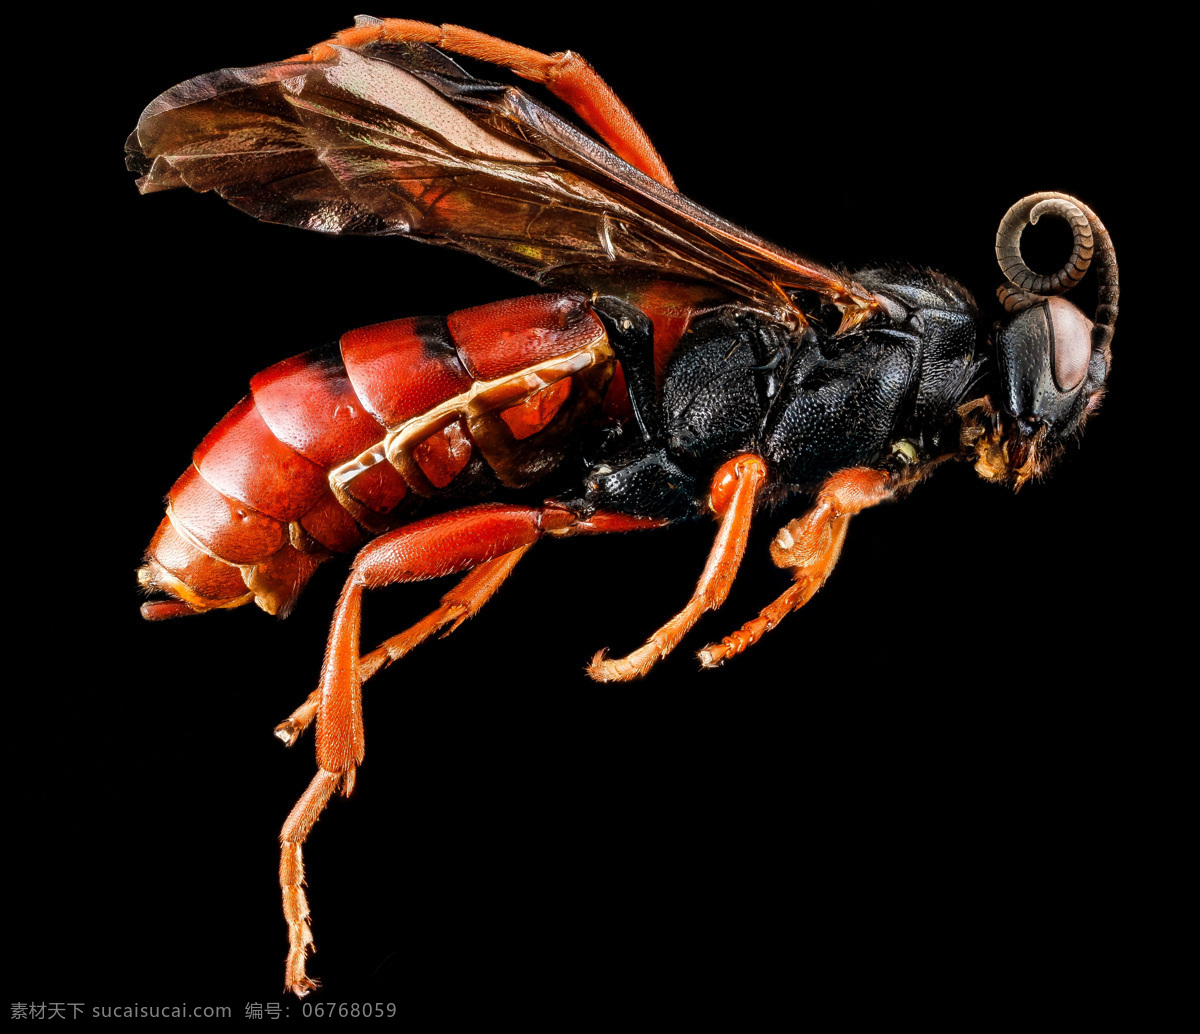 黄蜂 昆虫 蜇 动物 特写 局部特写 生物世界